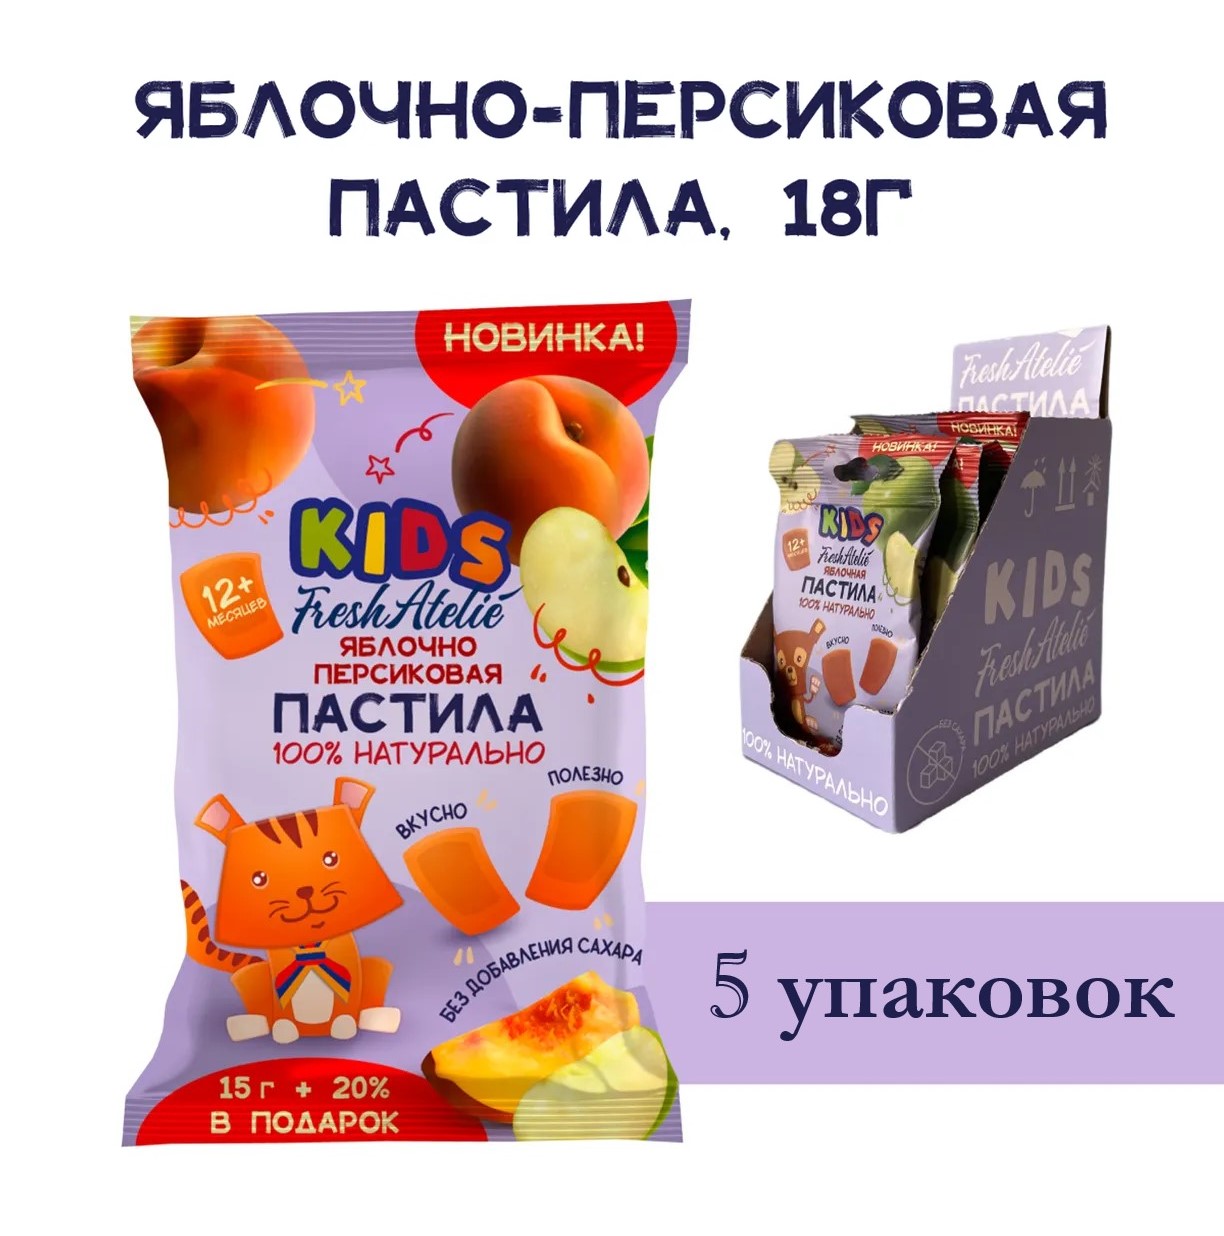 Пастила Яблочно-Персиковая для детей FRESH ATELIE KIDS Пастилки 15гр+20%, 5 упаковок